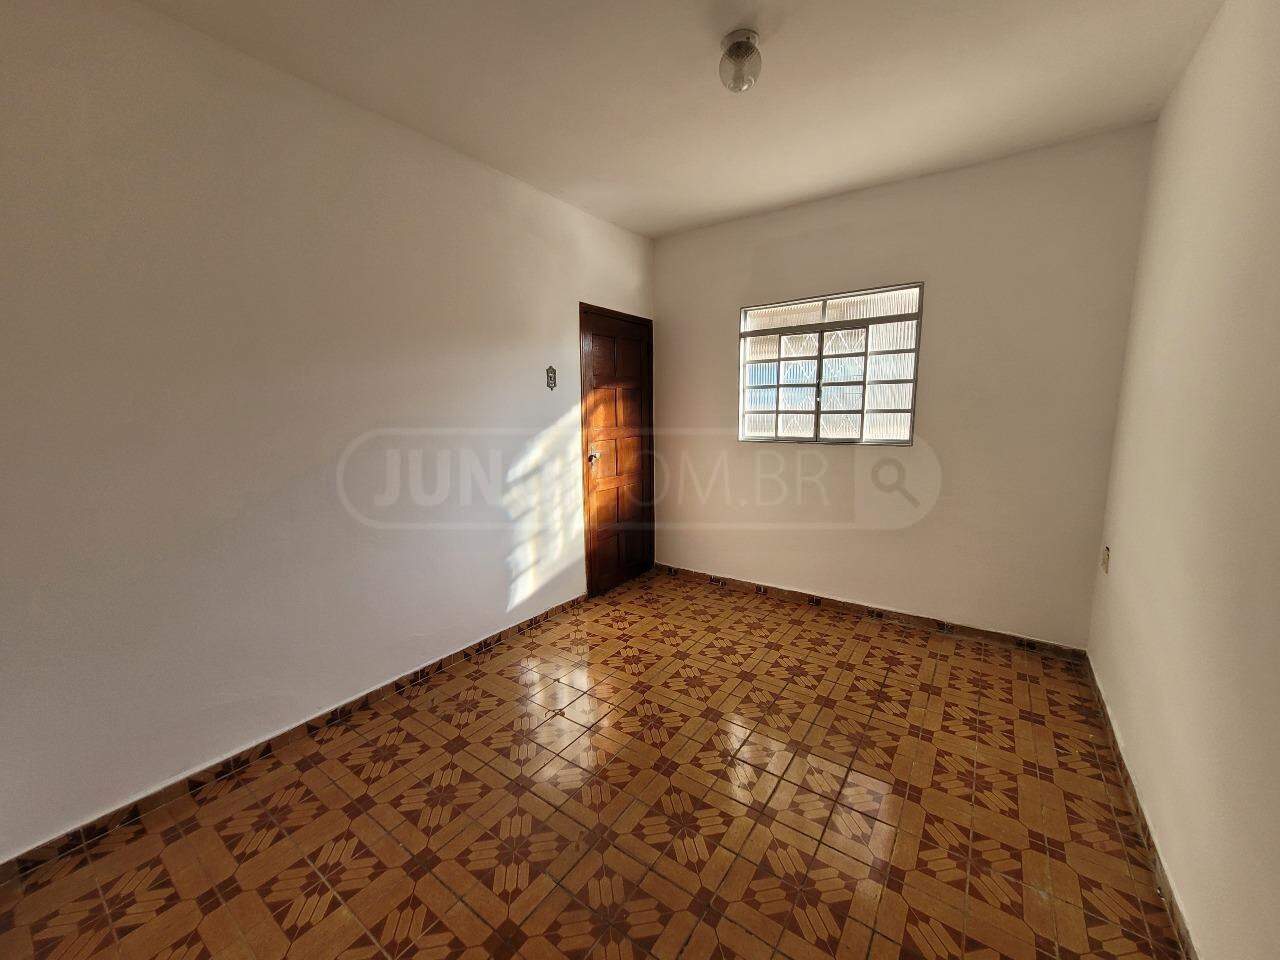 Casa à venda, 3 quartos, sendo 1 suíte, 4 vagas, no bairro Morumbi em Piracicaba - SP